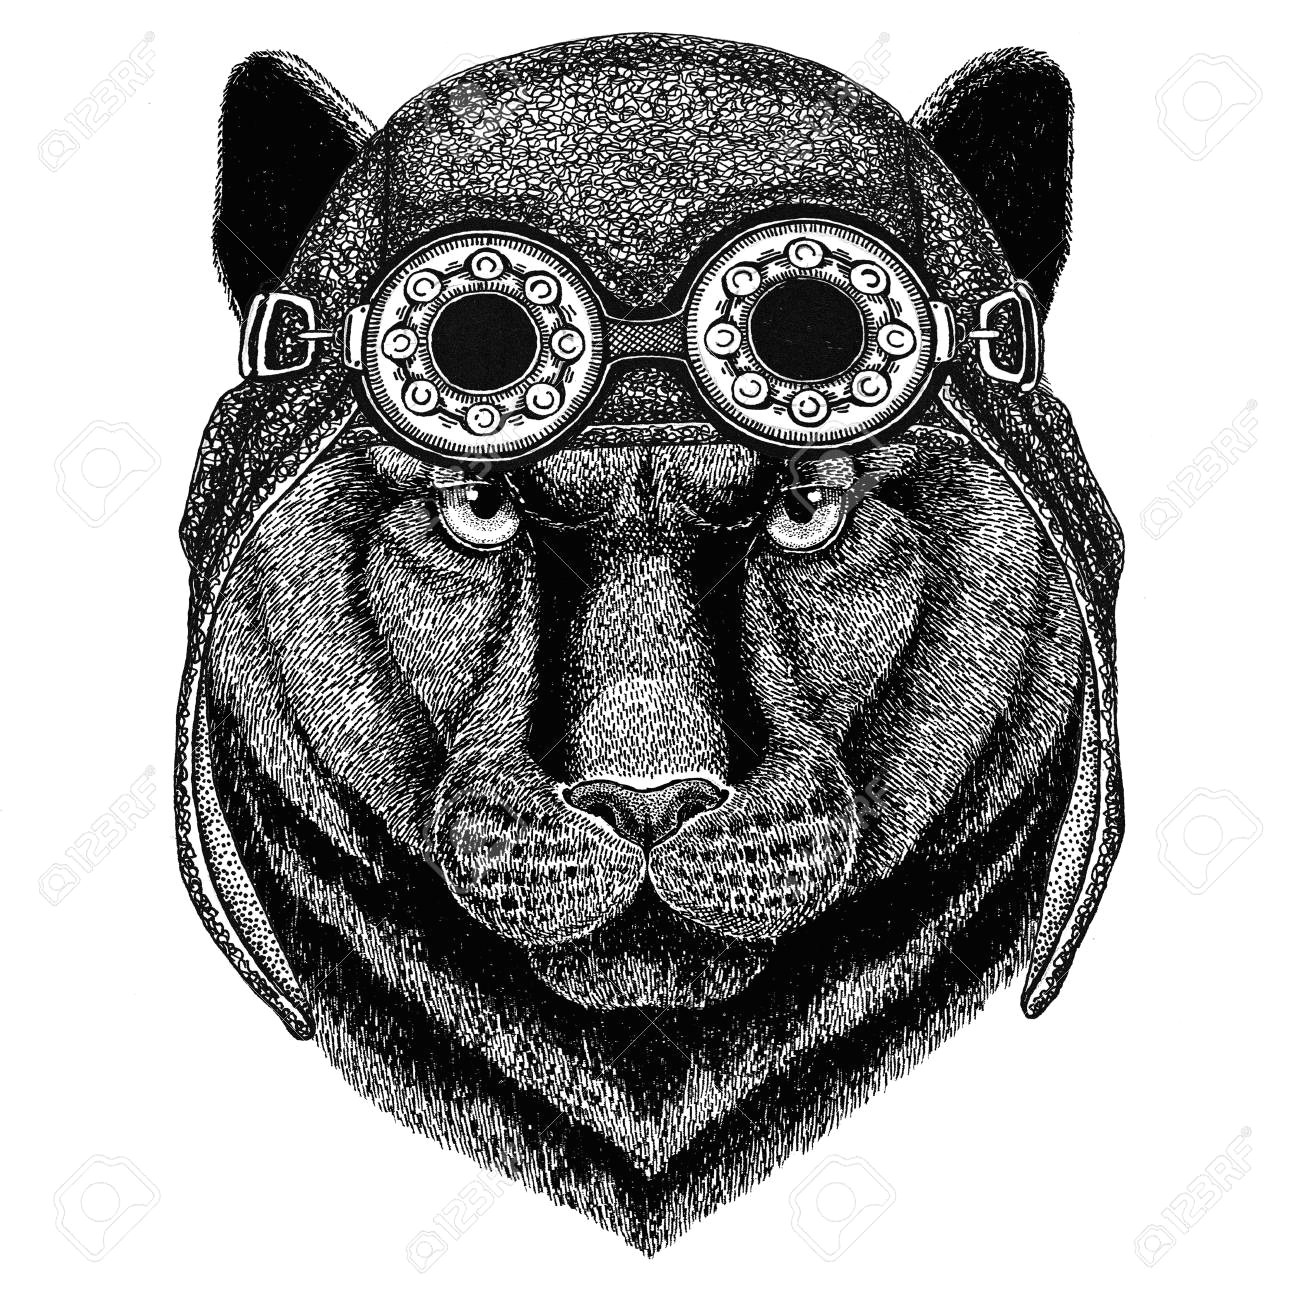 Drawing Black Panther Animal Stock Photo